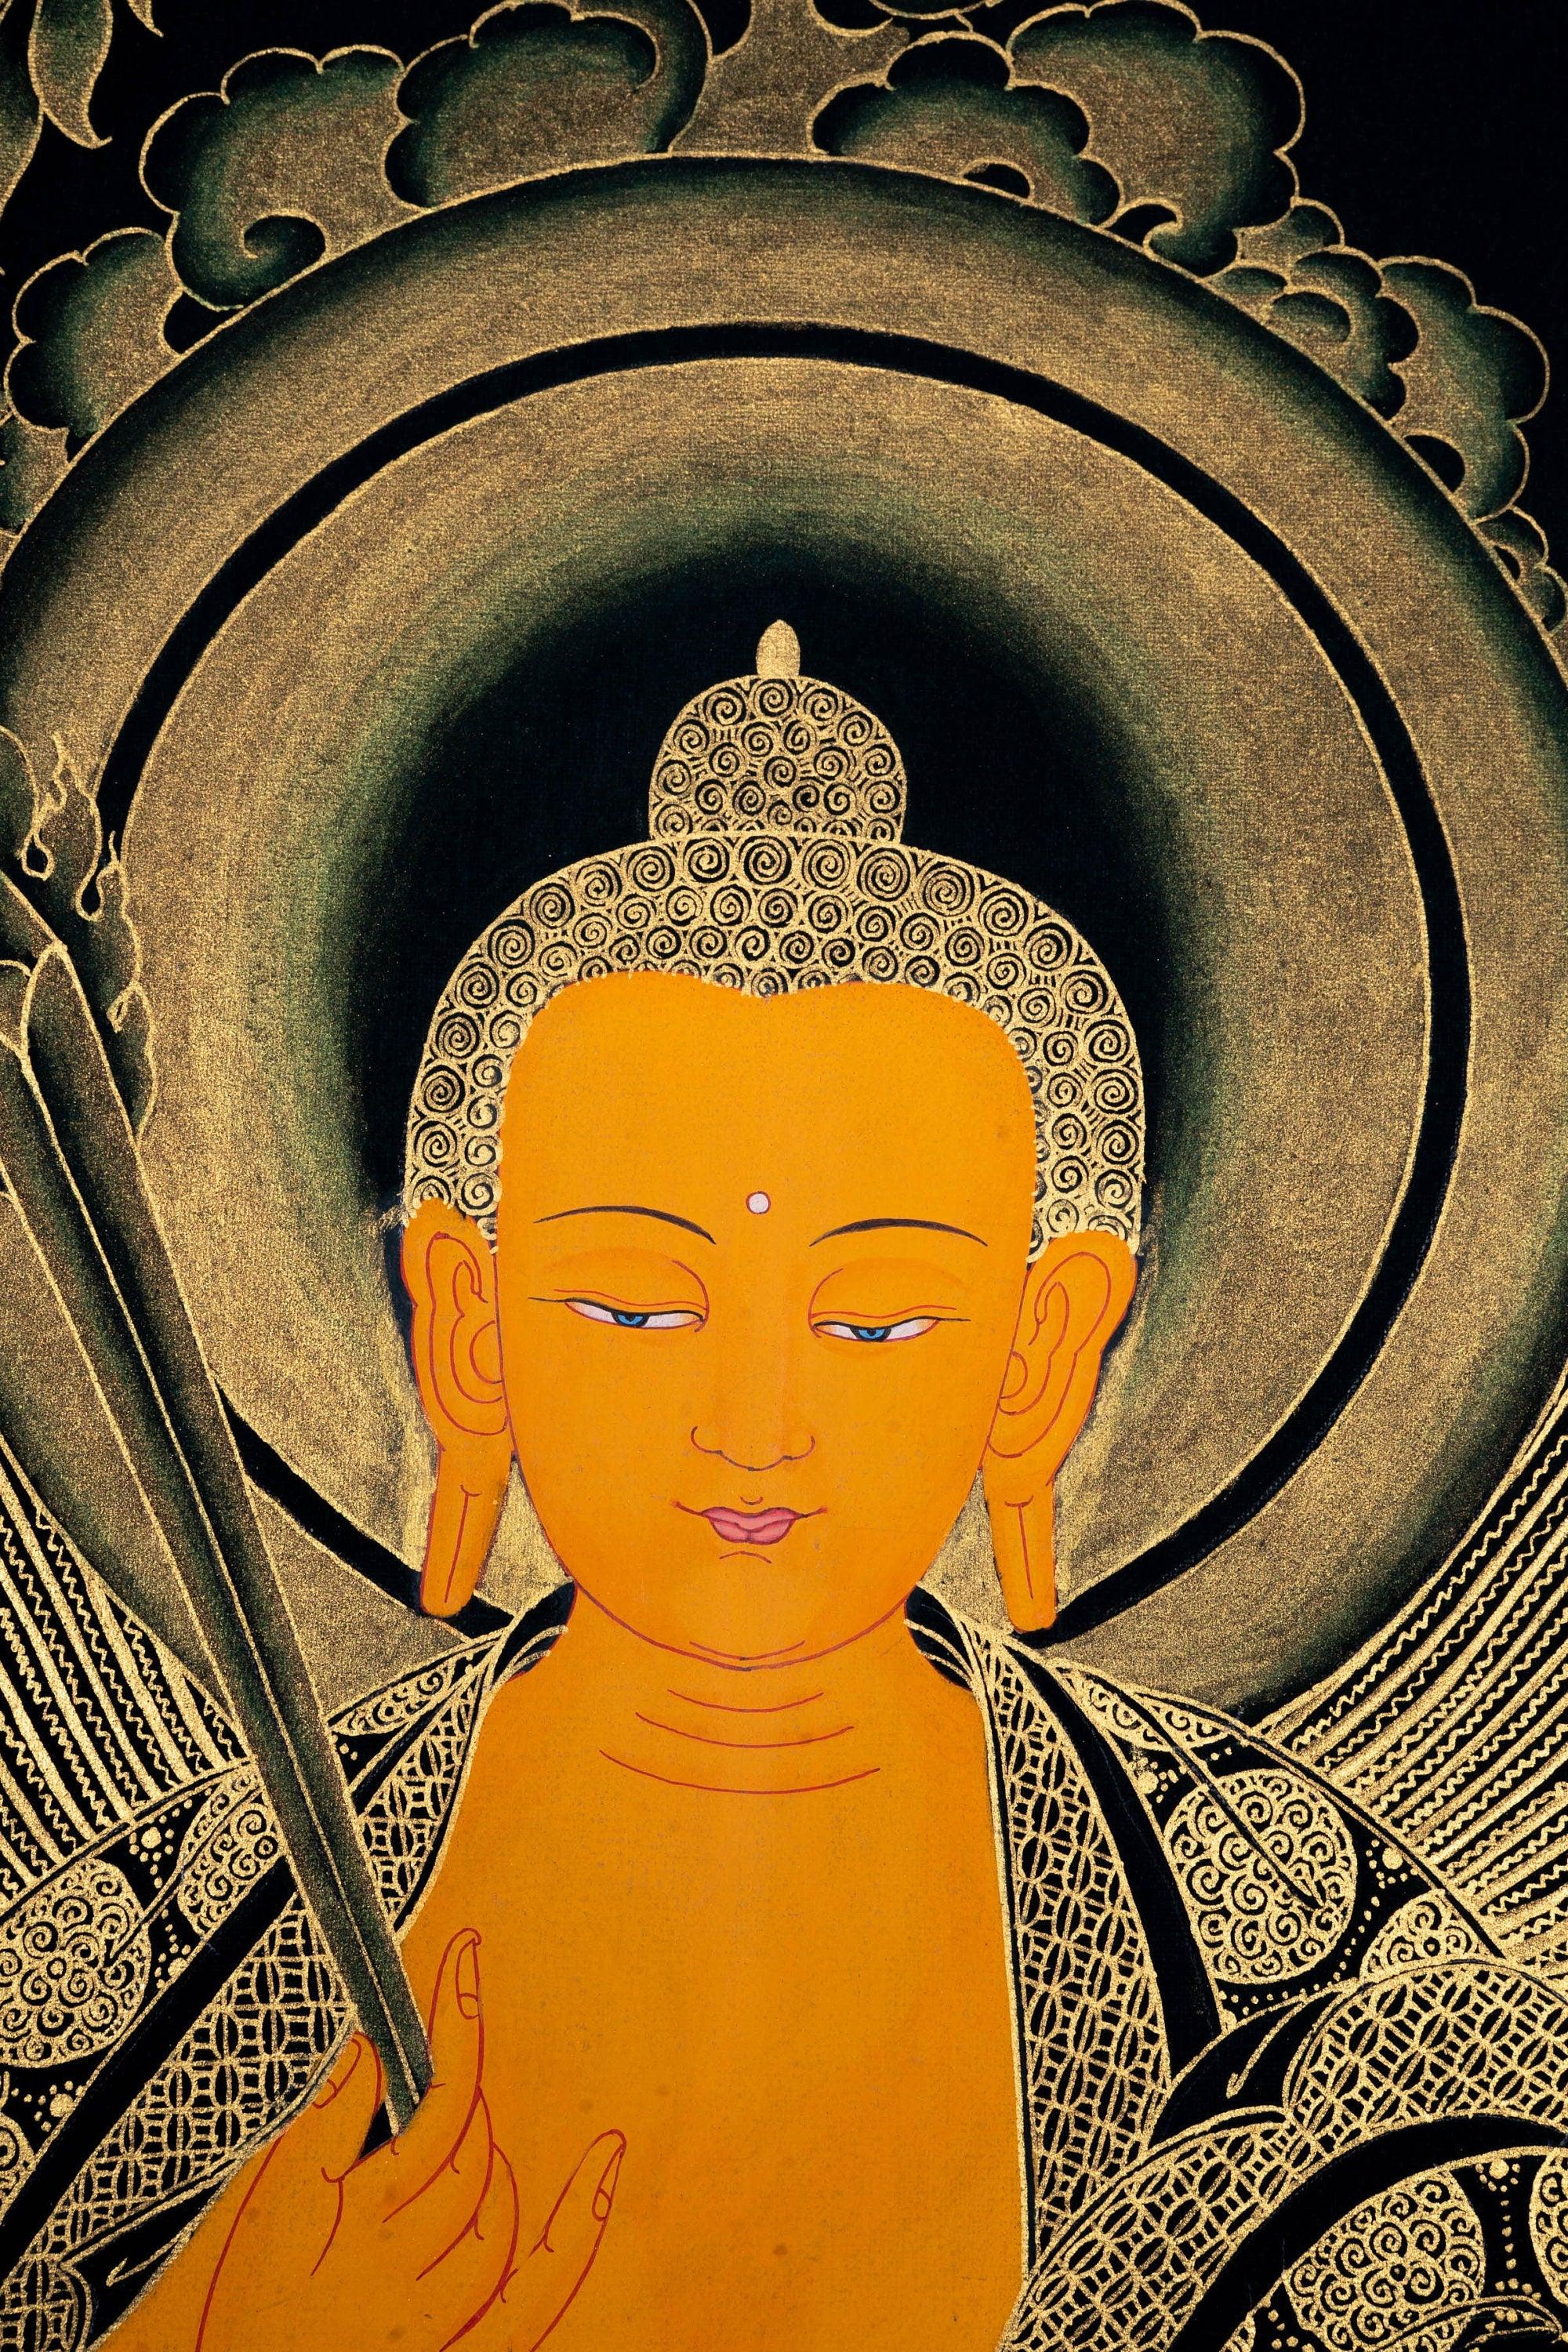 Beautiful Thangka Painting of Shakyamuni Buddha